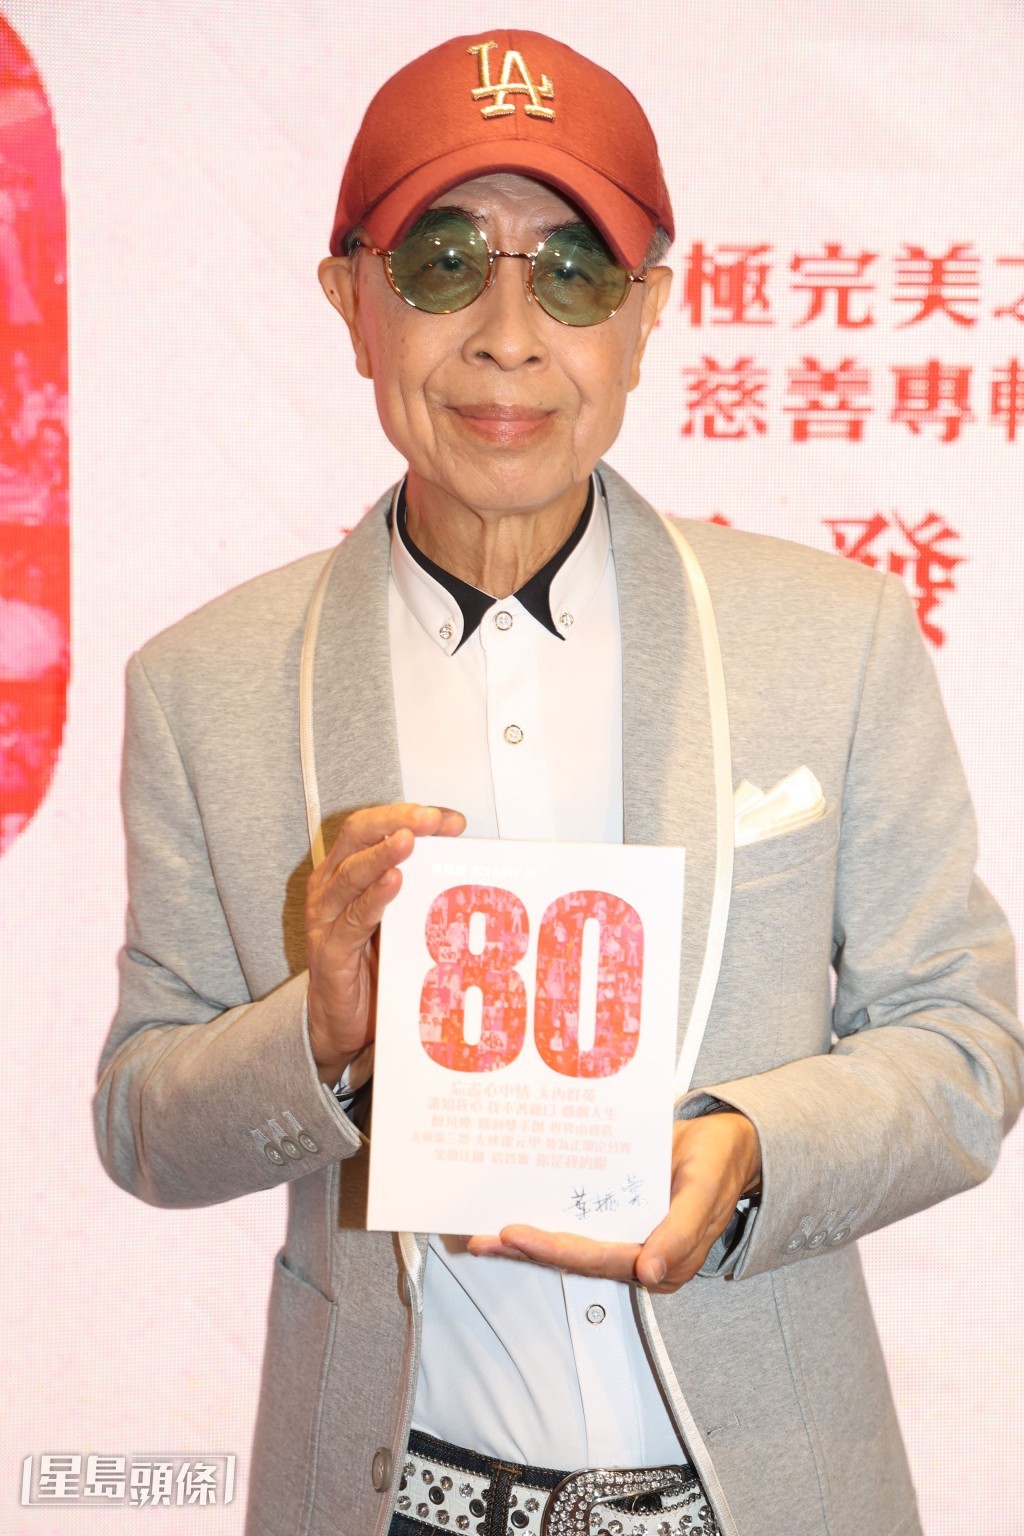 80岁叶振棠将慈善专辑定名为“80”。